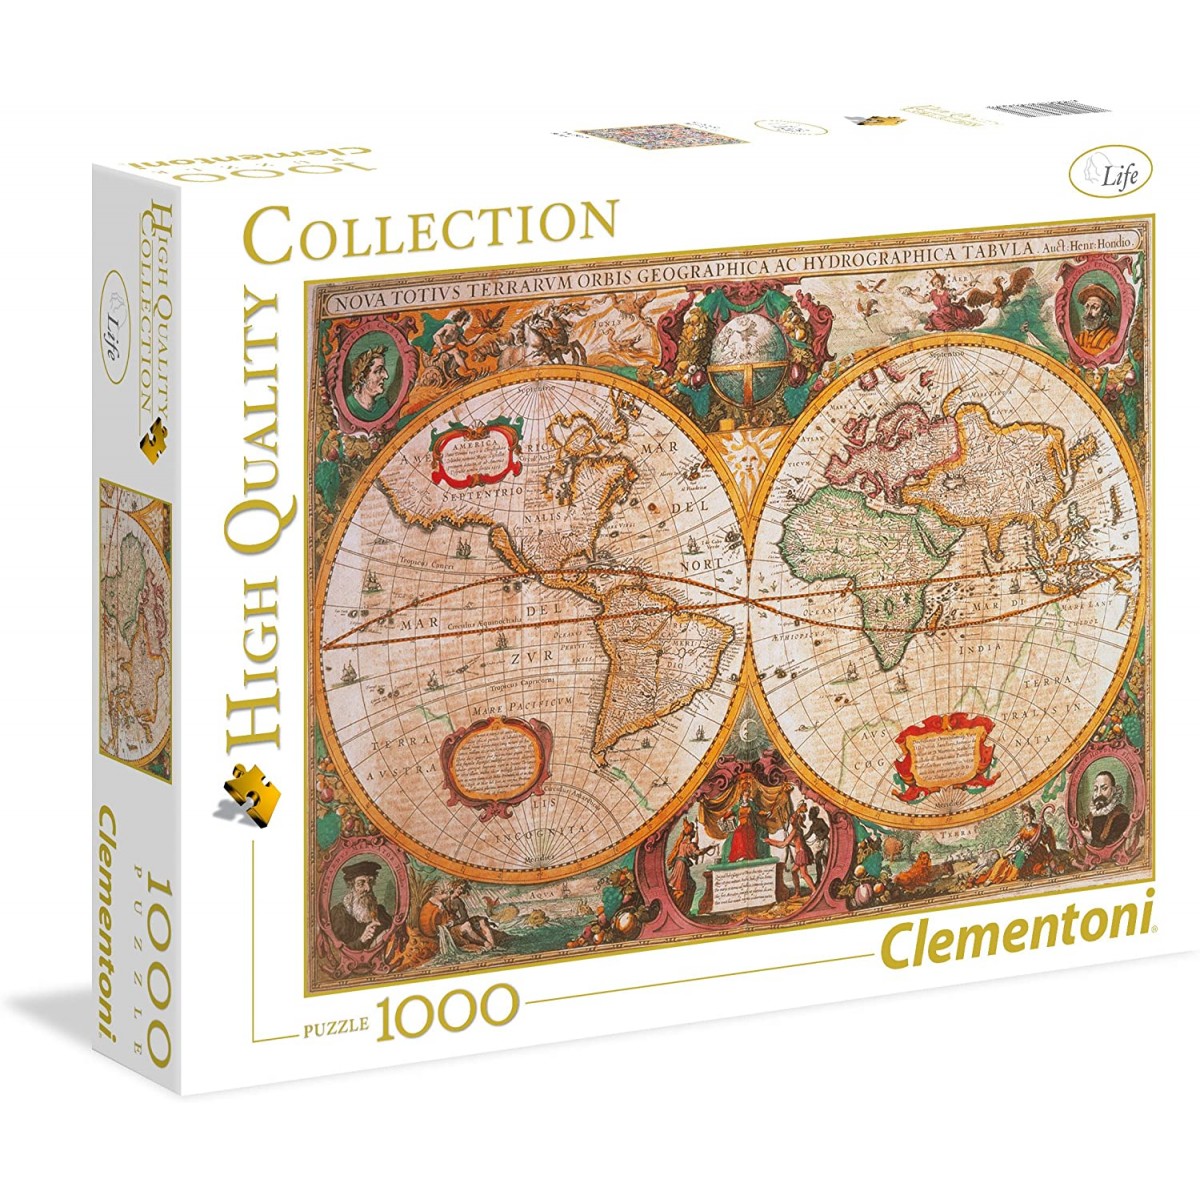 Puzzle mappa antica 1000 pezzi, Mappa mondo - Clementoni